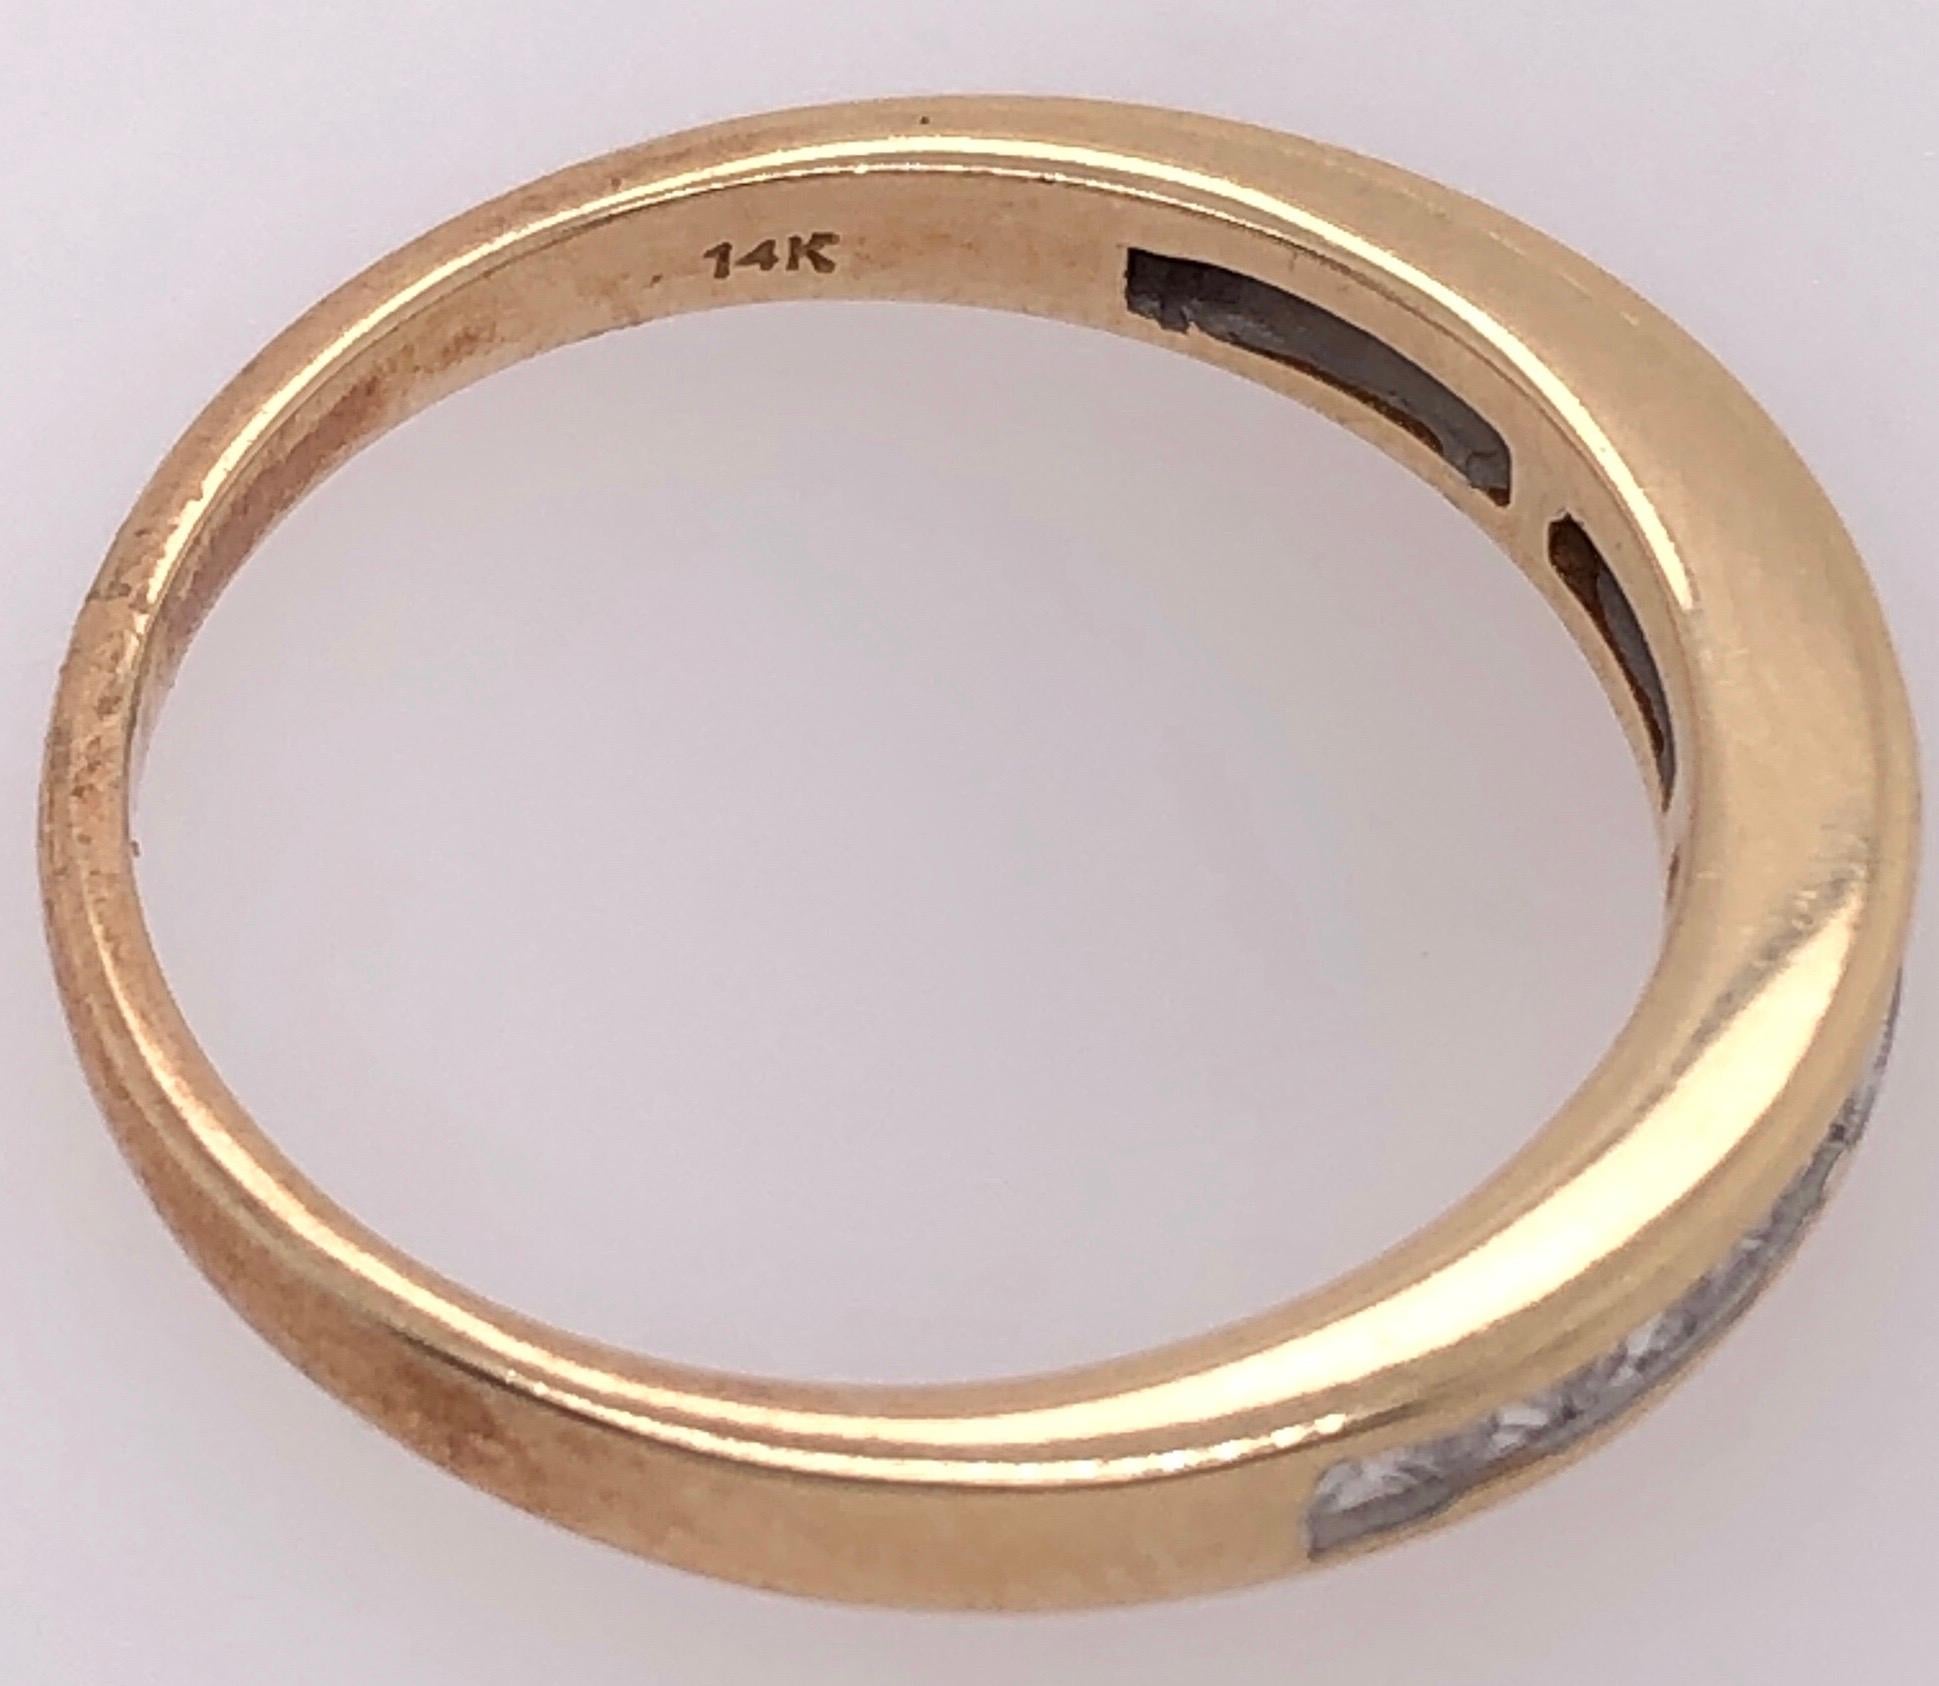 14 Karat Gelbgold Band / Ehering mit Diamanten 0,45 Total Diamond Weight.
Größe 7 
3 Gramm Gesamtgewicht.
